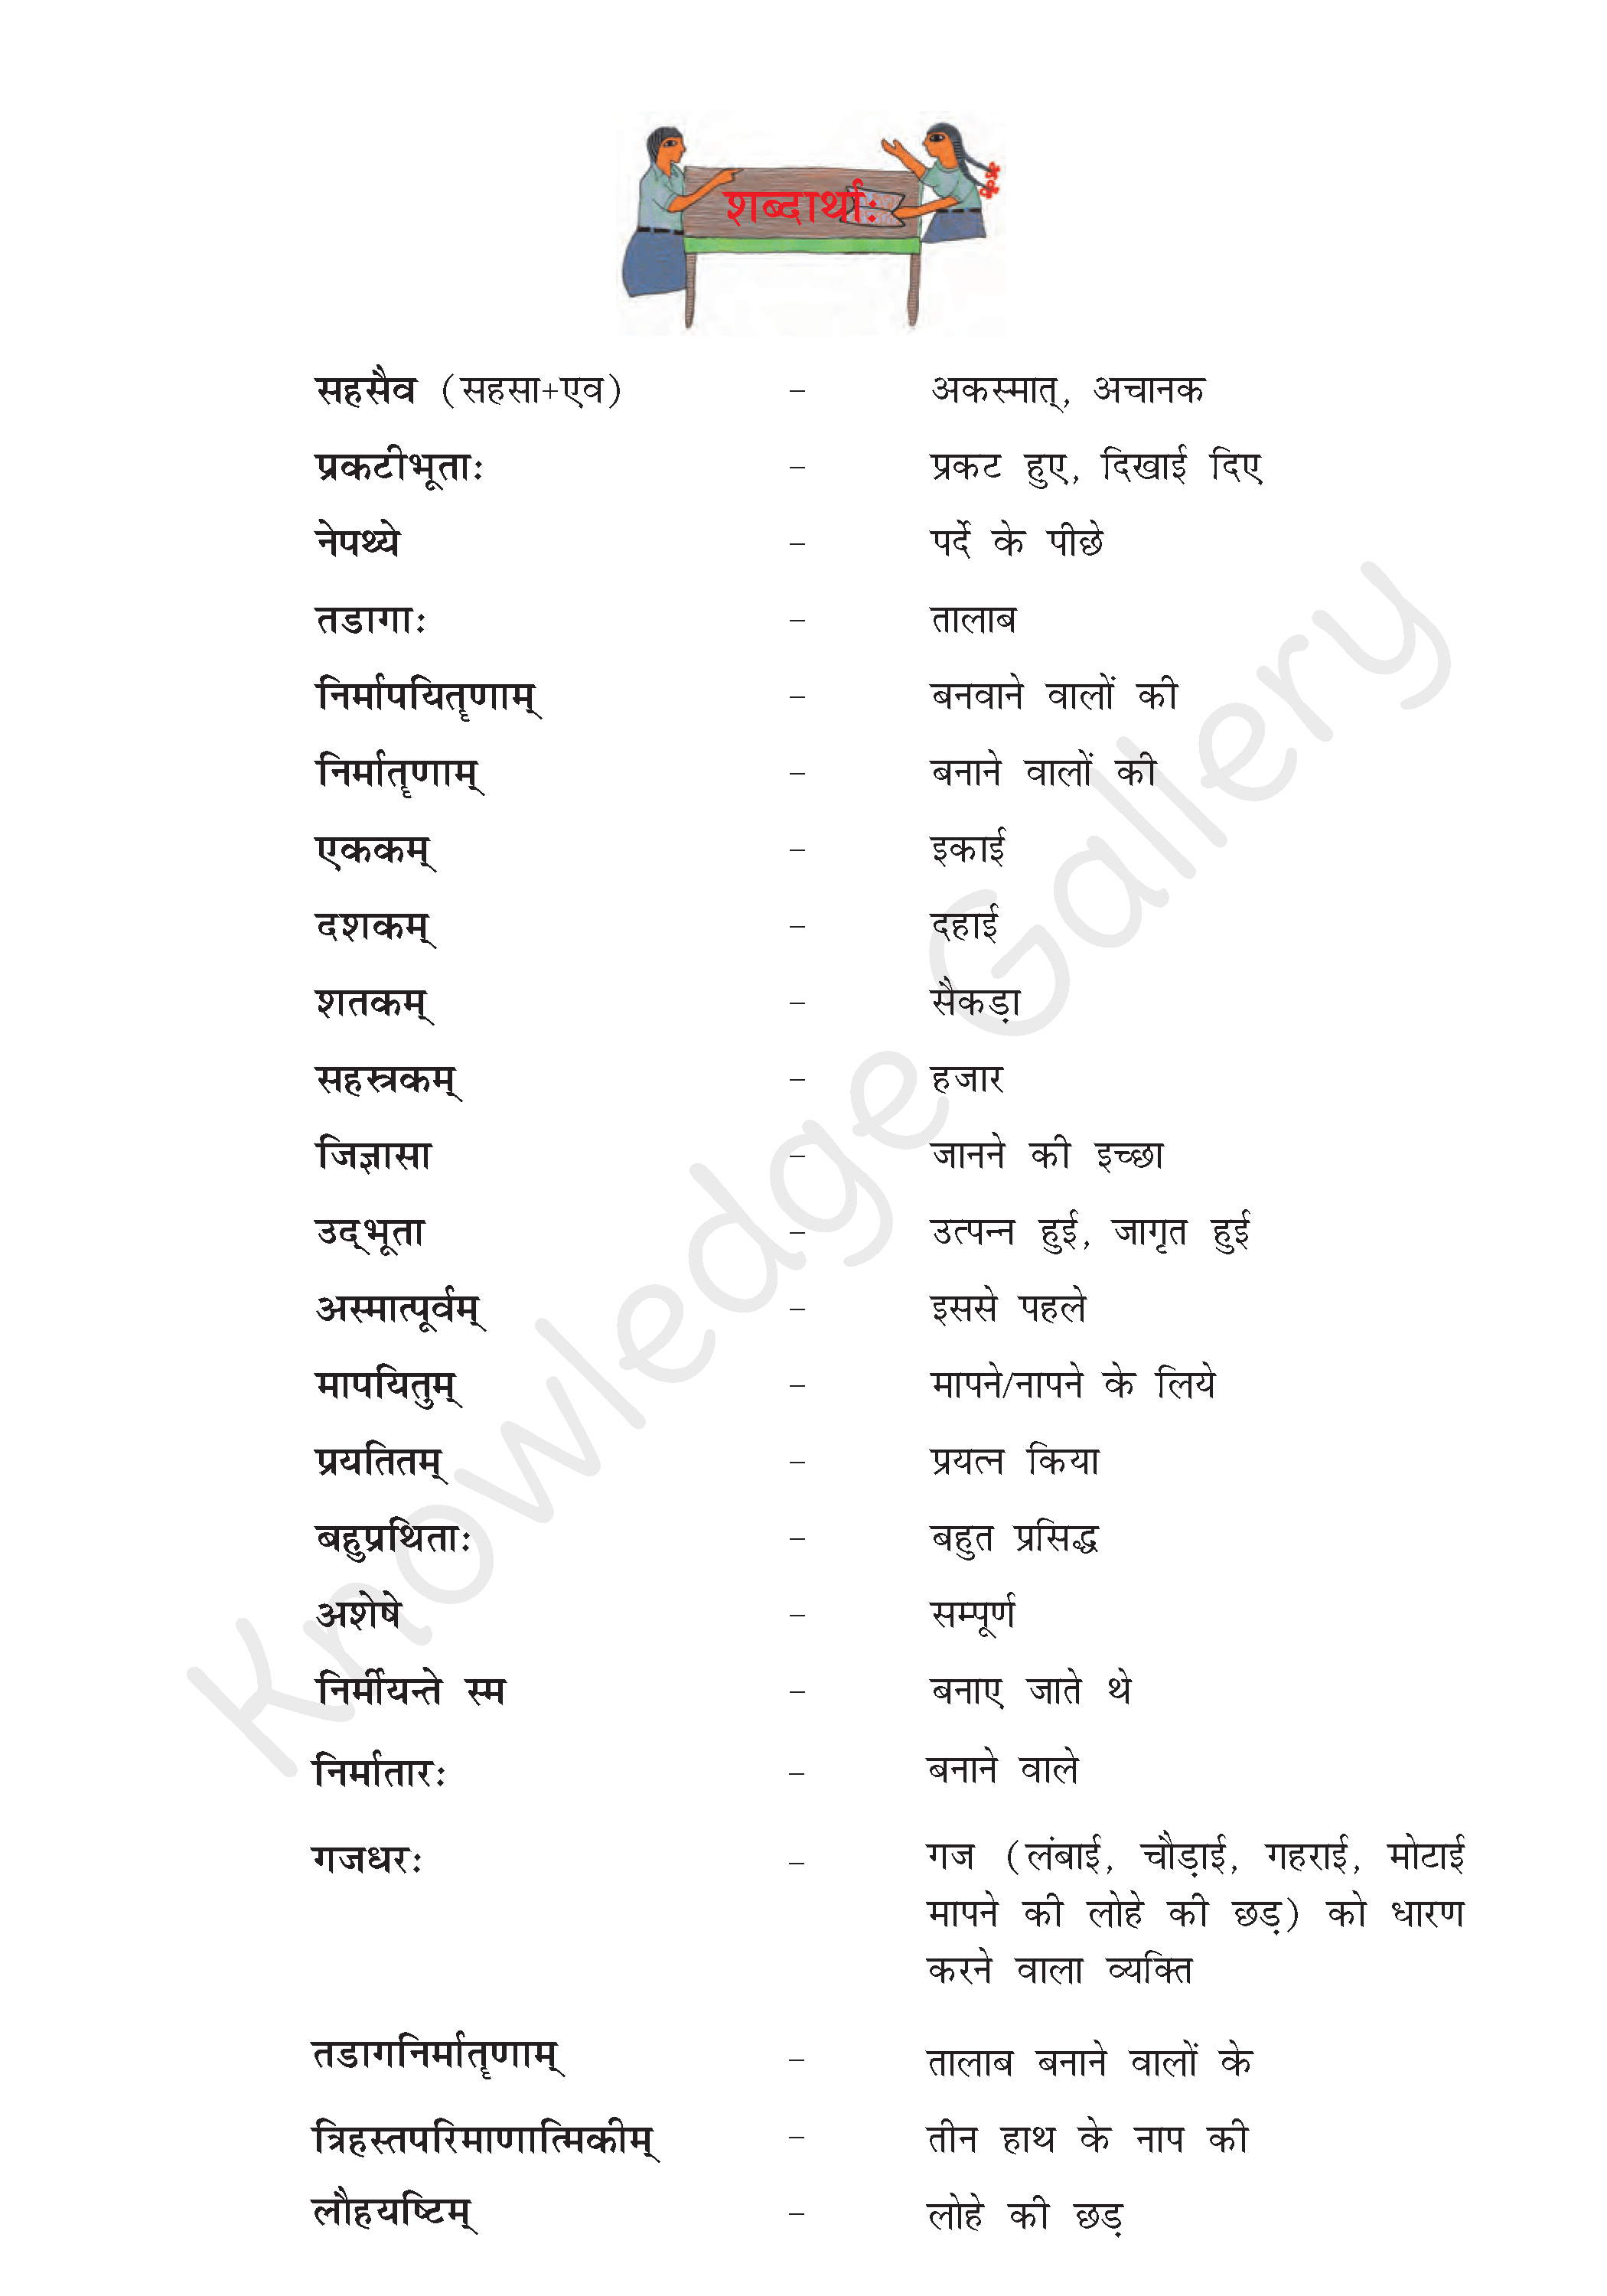 NCERT Solution For Class 8 Sanskrit Chapter 8 part 3